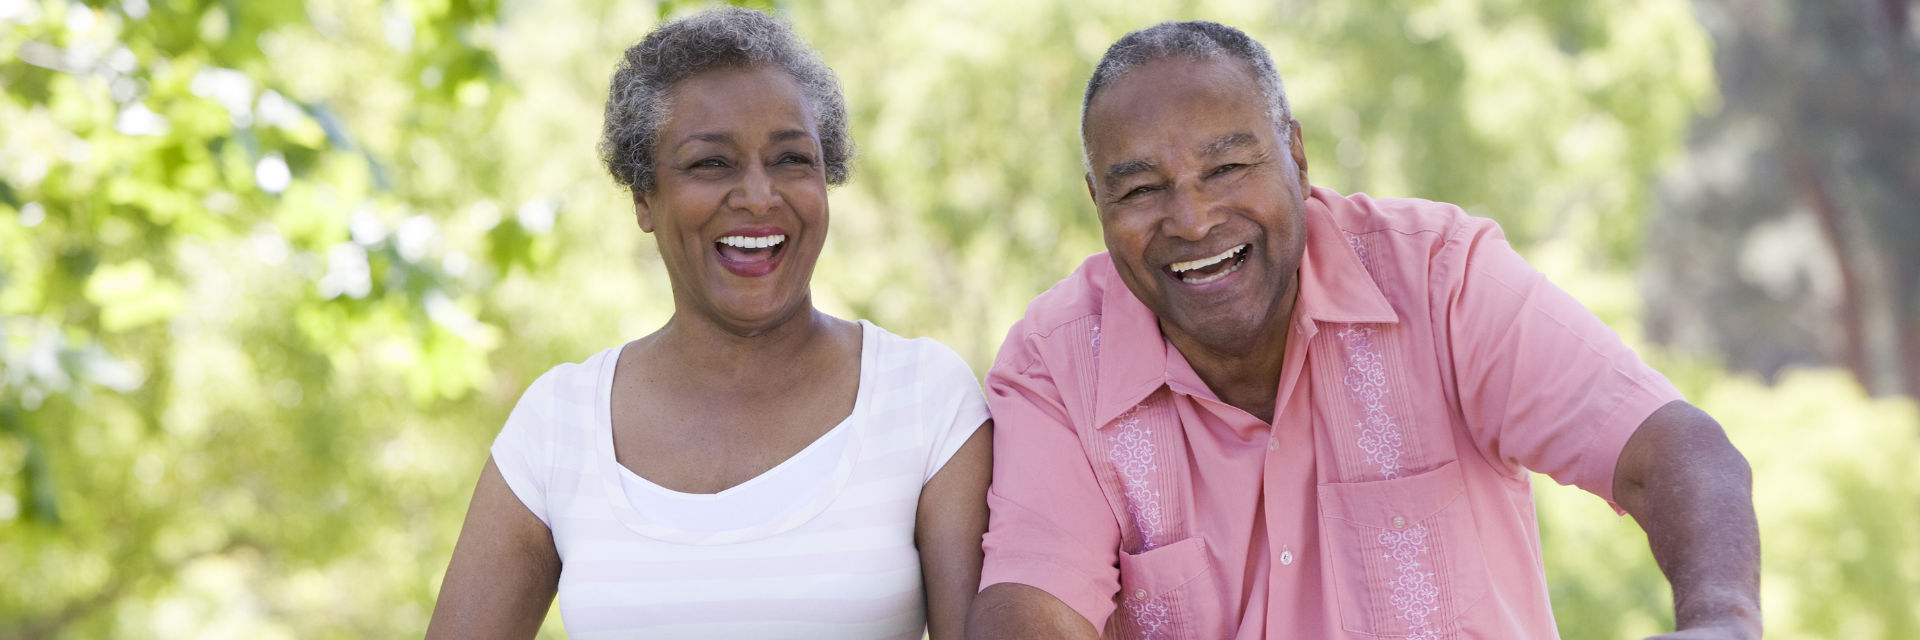 Happy senior Afro-American couple.